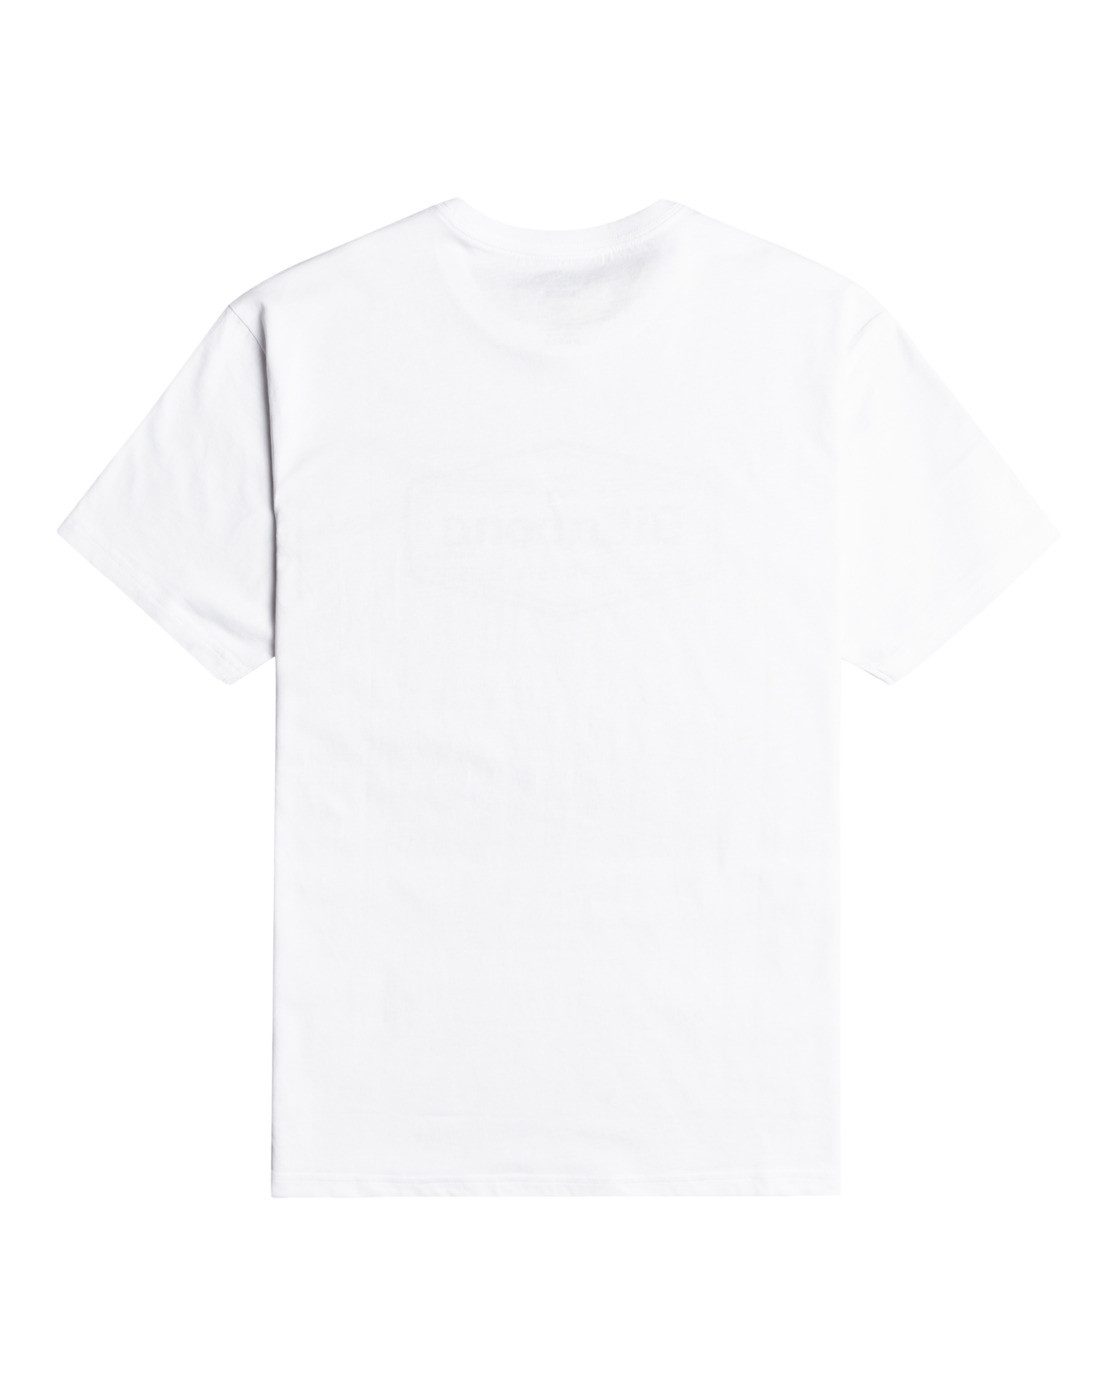 Billabong T-Shirt Trademark White